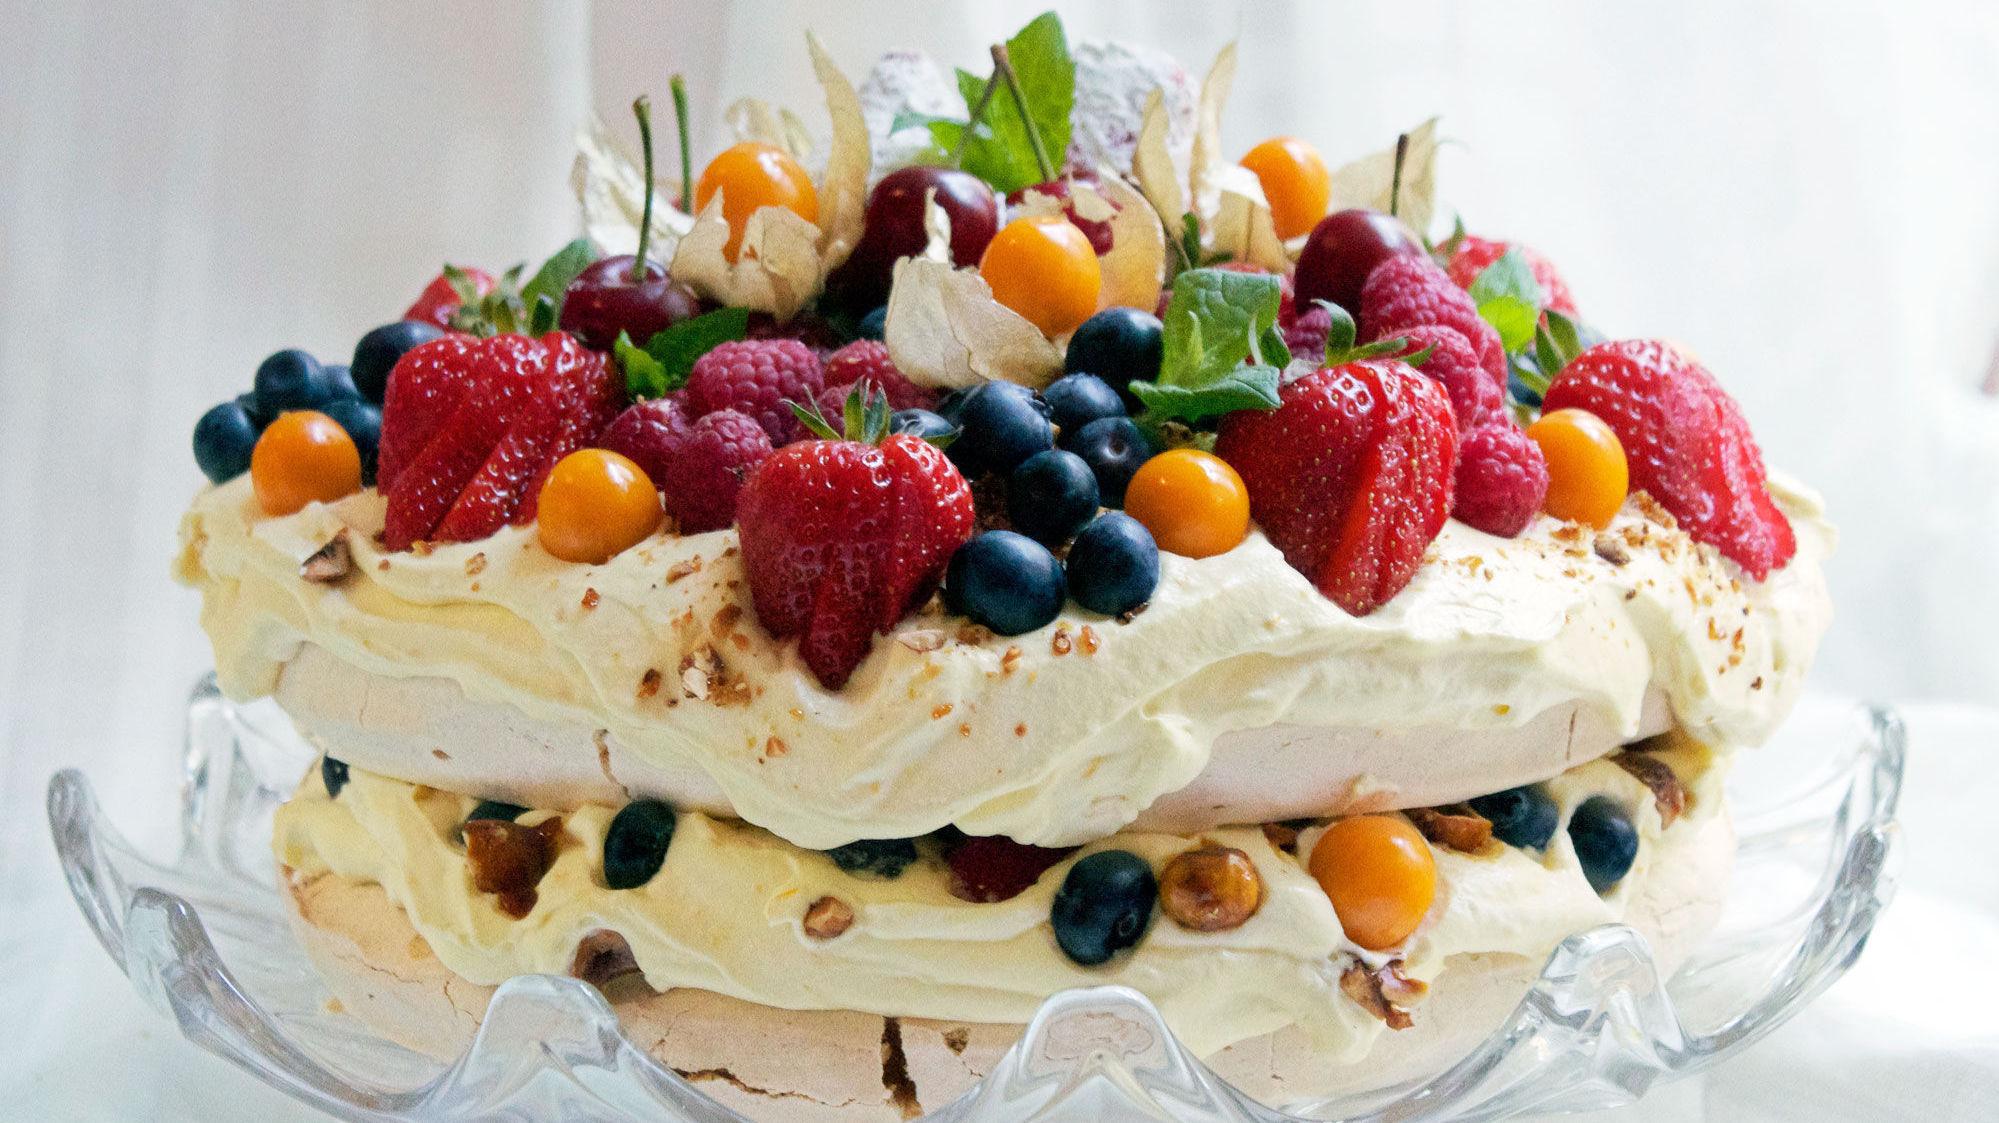 NORGES BESTE: Pavlova med knasende søte hasselnøtter, friske bær og en nydelig appelsinkrem er det som gjør Elins kake til Norges beste 17. mai-kake.